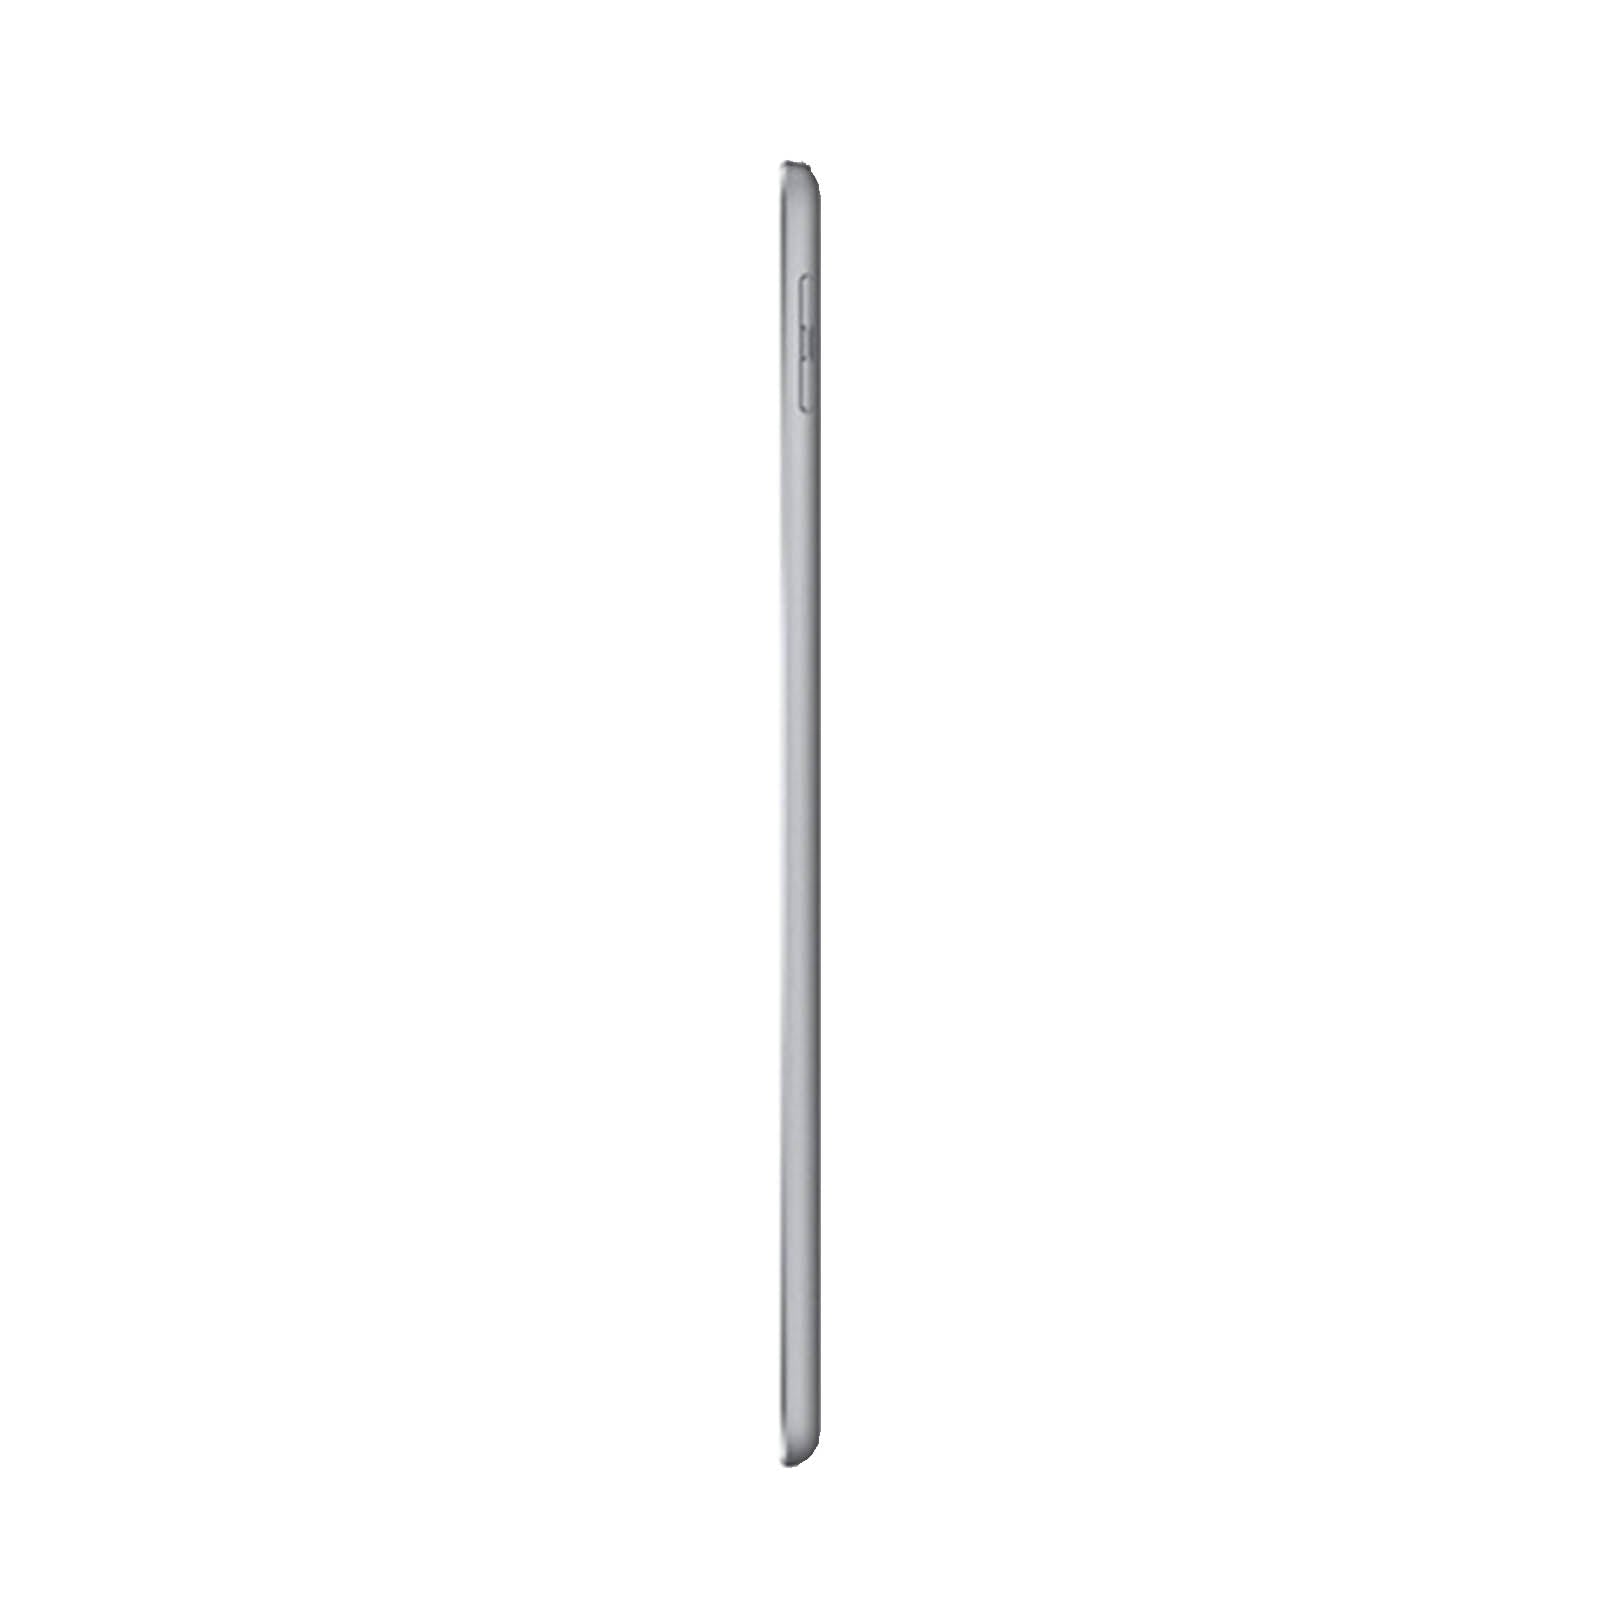 Apple iPad 5th Gen 9.7" 128GB Space Grey - WiFi